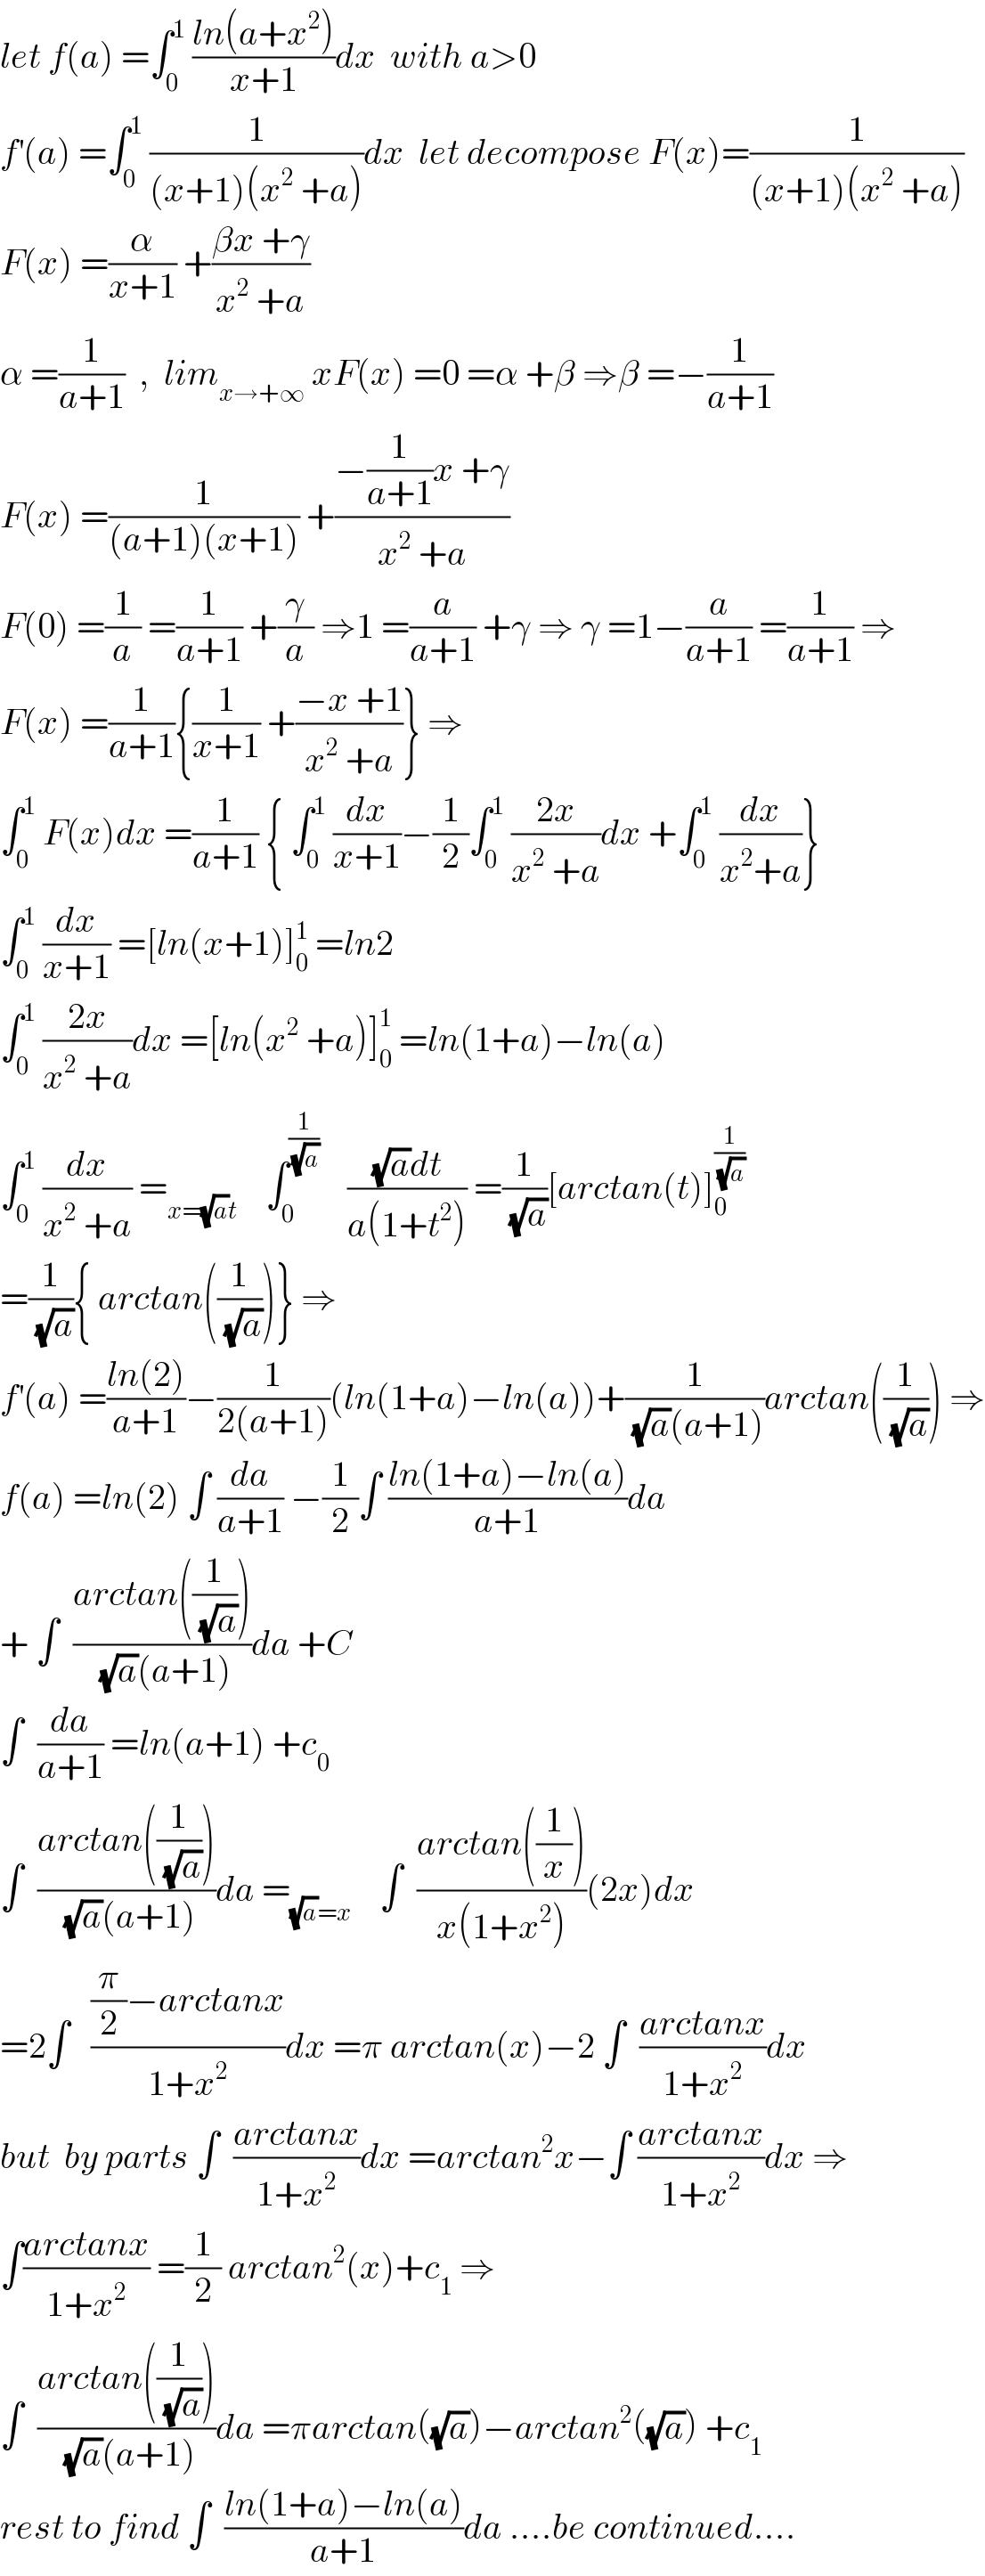 let f(a) =∫_0 ^1  ((ln(a+x^2 ))/(x+1))dx  with a>0  f^′ (a) =∫_0 ^1  (1/((x+1)(x^2  +a)))dx  let decompose F(x)=(1/((x+1)(x^2  +a)))  F(x) =(α/(x+1)) +((βx +γ)/(x^2  +a))  α =(1/(a+1))  ,  lim_(x→+∞)  xF(x) =0 =α +β ⇒β =−(1/(a+1))  F(x) =(1/((a+1)(x+1))) +((−(1/(a+1))x +γ)/(x^2  +a))  F(0) =(1/a) =(1/(a+1)) +(γ/a) ⇒1 =(a/(a+1)) +γ ⇒ γ =1−(a/(a+1)) =(1/(a+1)) ⇒  F(x) =(1/(a+1)){(1/(x+1)) +((−x +1)/(x^2  +a))} ⇒  ∫_0 ^1  F(x)dx =(1/(a+1)) { ∫_0 ^1  (dx/(x+1))−(1/2)∫_0 ^1  ((2x)/(x^2  +a))dx +∫_0 ^1  (dx/(x^2 +a))}  ∫_0 ^1  (dx/(x+1)) =[ln(x+1)]_0 ^1  =ln2  ∫_0 ^1  ((2x)/(x^2  +a))dx =[ln(x^2  +a)]_0 ^1  =ln(1+a)−ln(a)  ∫_0 ^1  (dx/(x^2  +a)) =_(x=(√a)t)     ∫_0 ^(1/(√a))     (((√a)dt)/(a(1+t^2 ))) =(1/(√a))[arctan(t)]_0 ^(1/(√a))   =(1/(√a)){ arctan((1/(√a)))} ⇒  f^′ (a) =((ln(2))/(a+1))−(1/(2(a+1)))(ln(1+a)−ln(a))+(1/((√a)(a+1)))arctan((1/(√a))) ⇒  f(a) =ln(2) ∫ (da/(a+1)) −(1/2)∫ ((ln(1+a)−ln(a))/(a+1))da  + ∫  ((arctan((1/(√a))))/((√a)(a+1)))da +C  ∫  (da/(a+1)) =ln(a+1) +c_0   ∫  ((arctan((1/(√a))))/((√a)(a+1)))da =_((√a)=x)     ∫  ((arctan((1/x)))/(x(1+x^2 )))(2x)dx  =2∫   (((π/2)−arctanx)/(1+x^2 ))dx =π arctan(x)−2 ∫  ((arctanx)/(1+x^2 ))dx  but  by parts ∫  ((arctanx)/(1+x^2 ))dx =arctan^2 x−∫ ((arctanx)/(1+x^2 ))dx ⇒  ∫((arctanx)/(1+x^2 )) =(1/2) arctan^2 (x)+c_1  ⇒  ∫  ((arctan((1/(√a))))/((√a)(a+1)))da =πarctan((√a))−arctan^2 ((√a)) +c_1   rest to find ∫  ((ln(1+a)−ln(a))/(a+1))da ....be continued....  